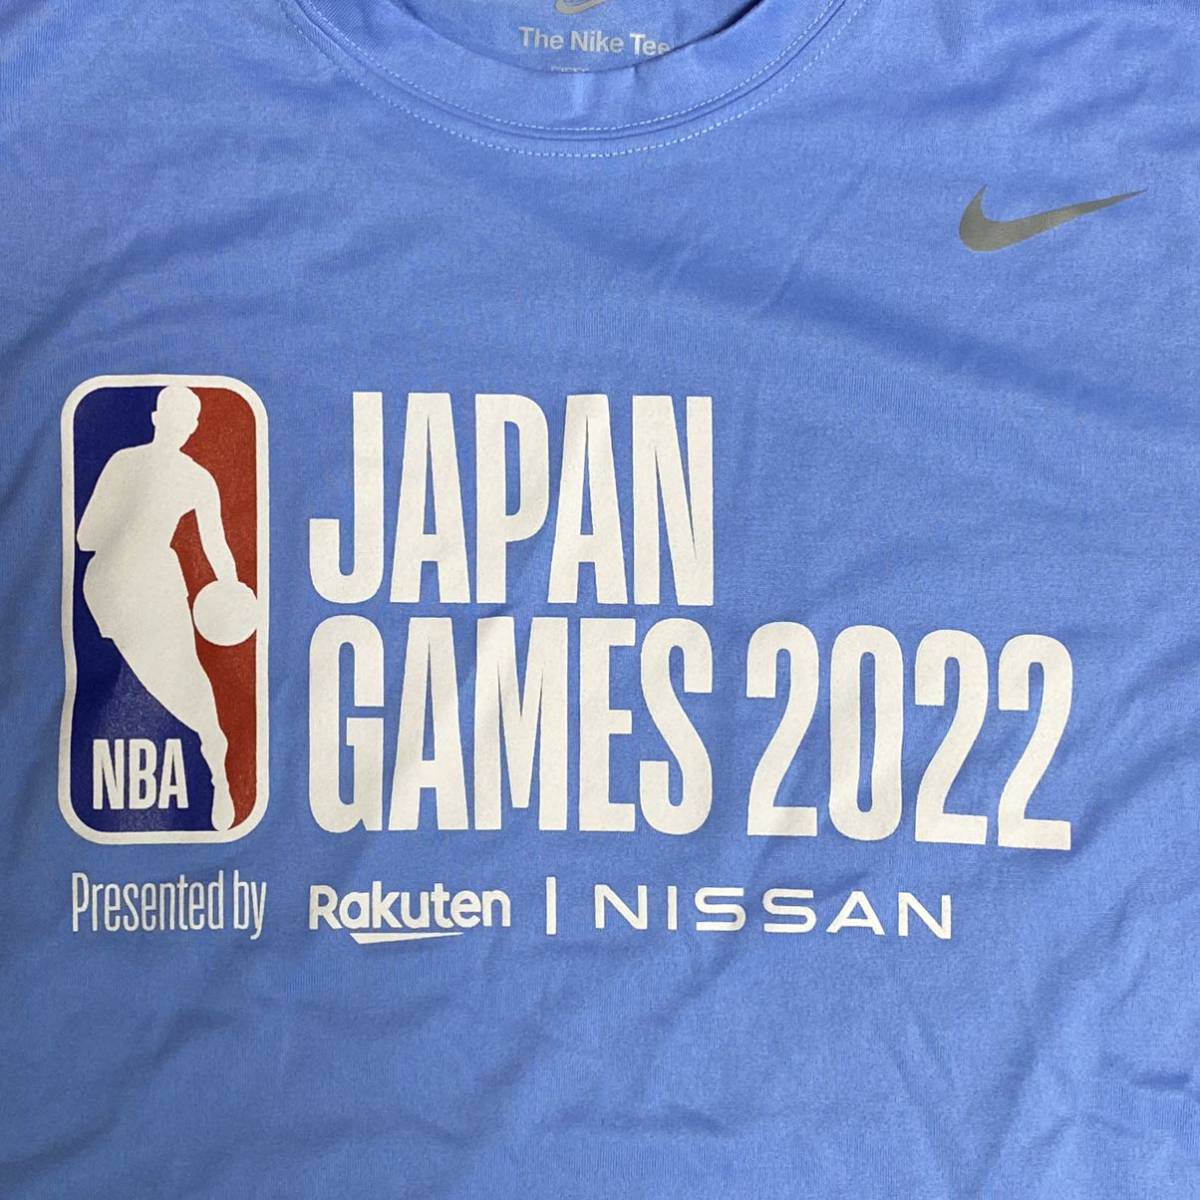 非売品】NIKE製 NBA japan games 2022限定シャツMサイズ